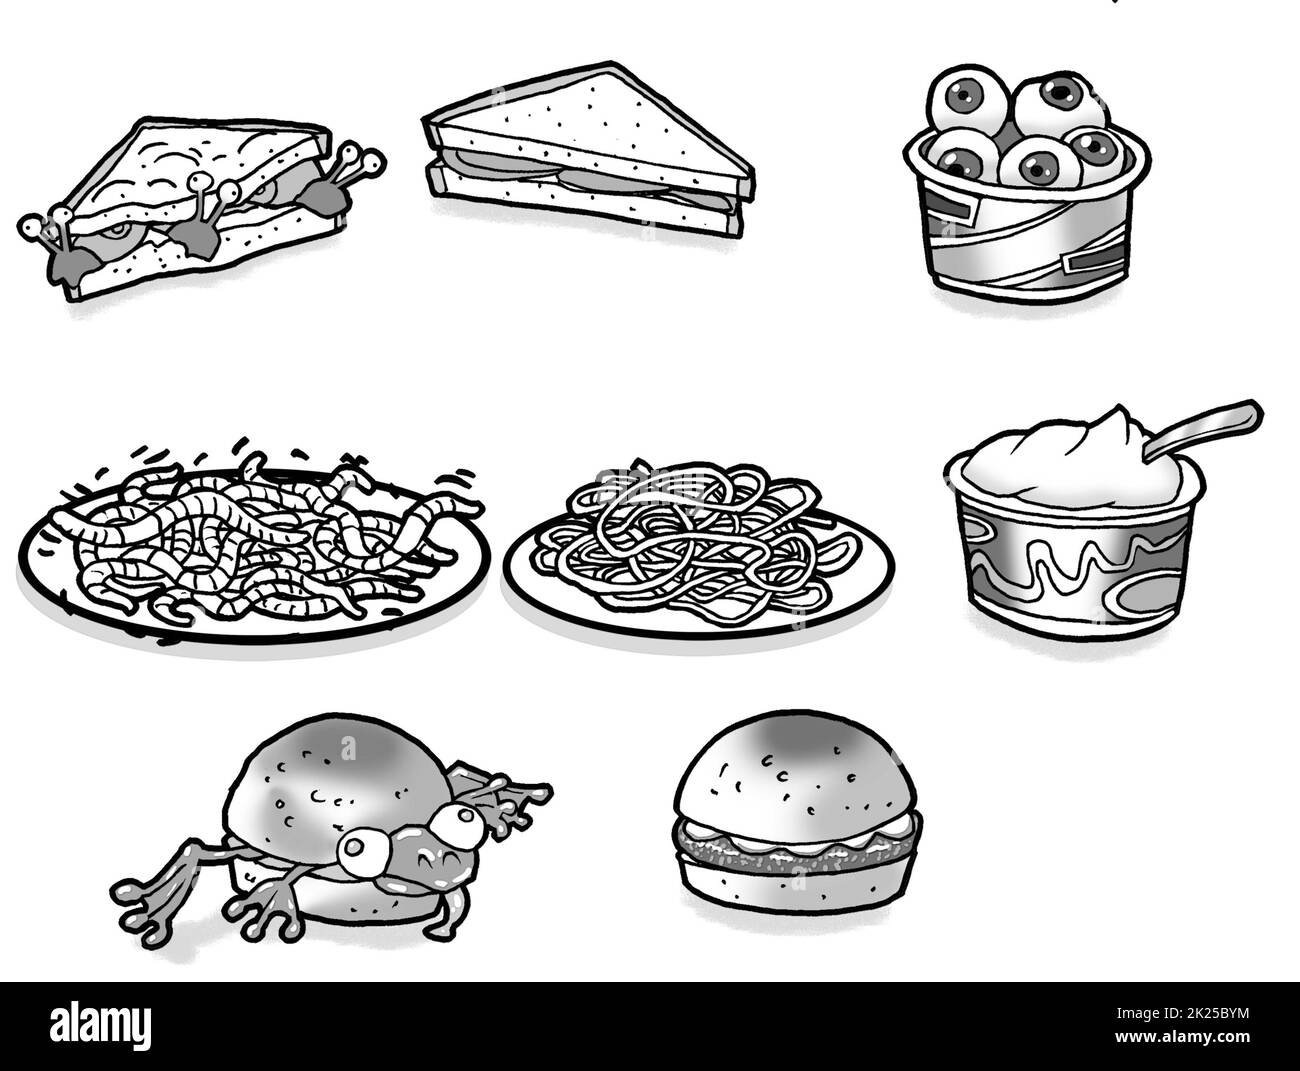 Schwarz-Weiß-Kunst, zeigt eine Auswahl von gruseligen, fiktiven, Halloween-Essen, Kinder pädagogische Aktivitäten Seiten, Einfärben, Monster-Party-Menüs. Stockfoto